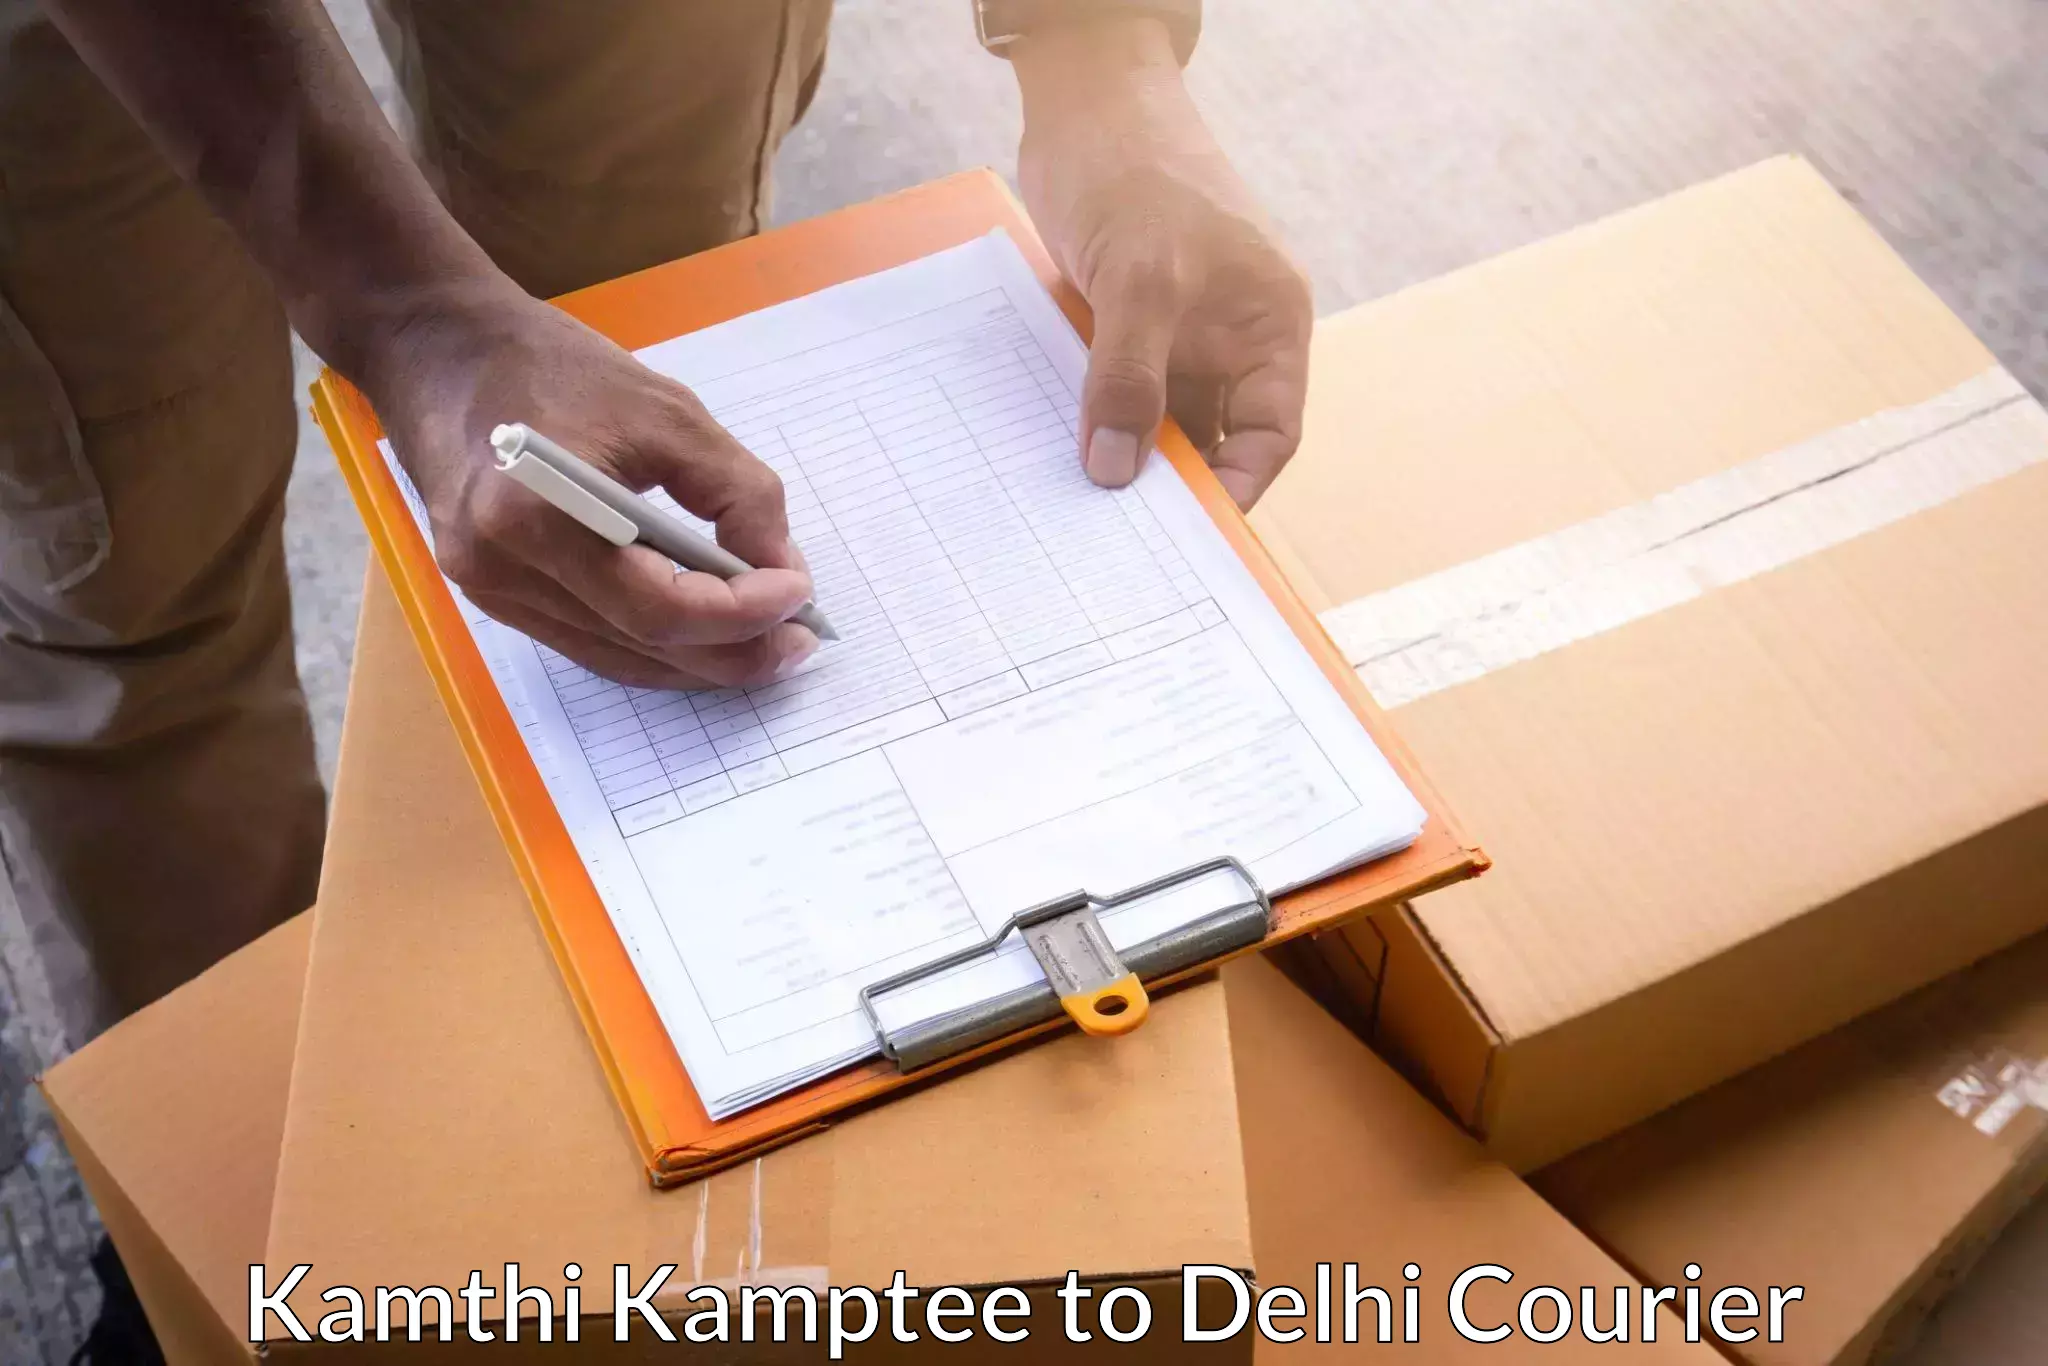 Customer-centric shipping Kamthi Kamptee to Jamia Millia Islamia New Delhi